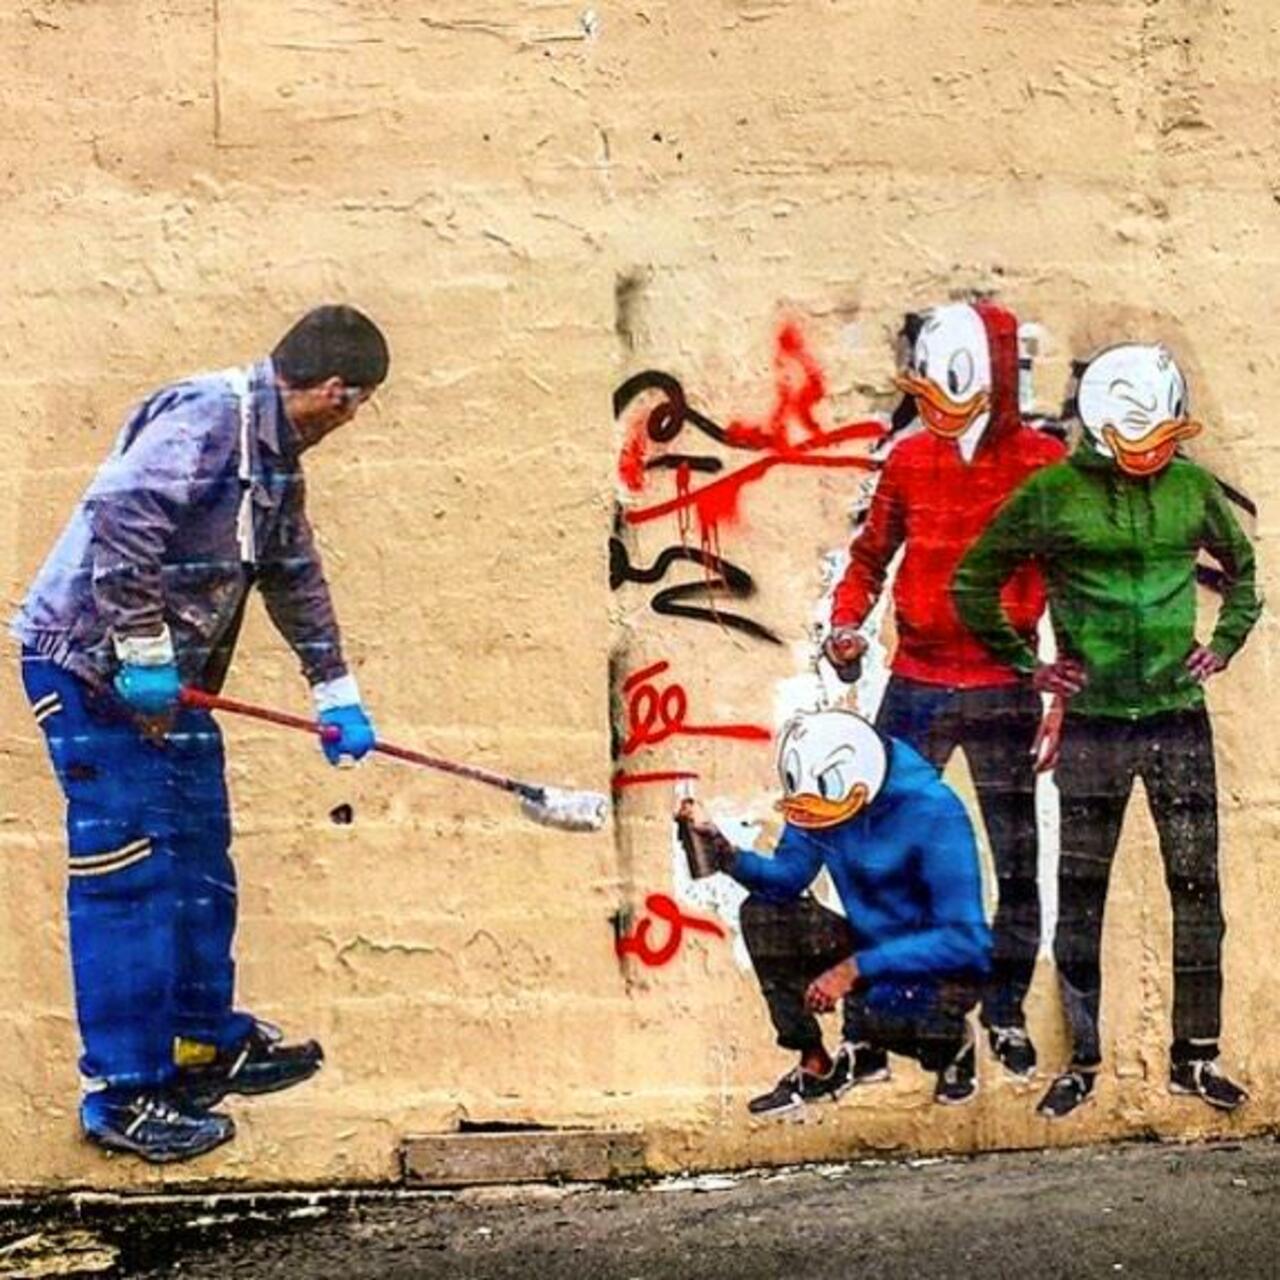 Jai_5511: RT circumjacent_fr: #Paris #graffiti photo by jeanlucr http://ift.tt/1NEKxOQ #StreetArt http://t.co/3a1x7s84EQ